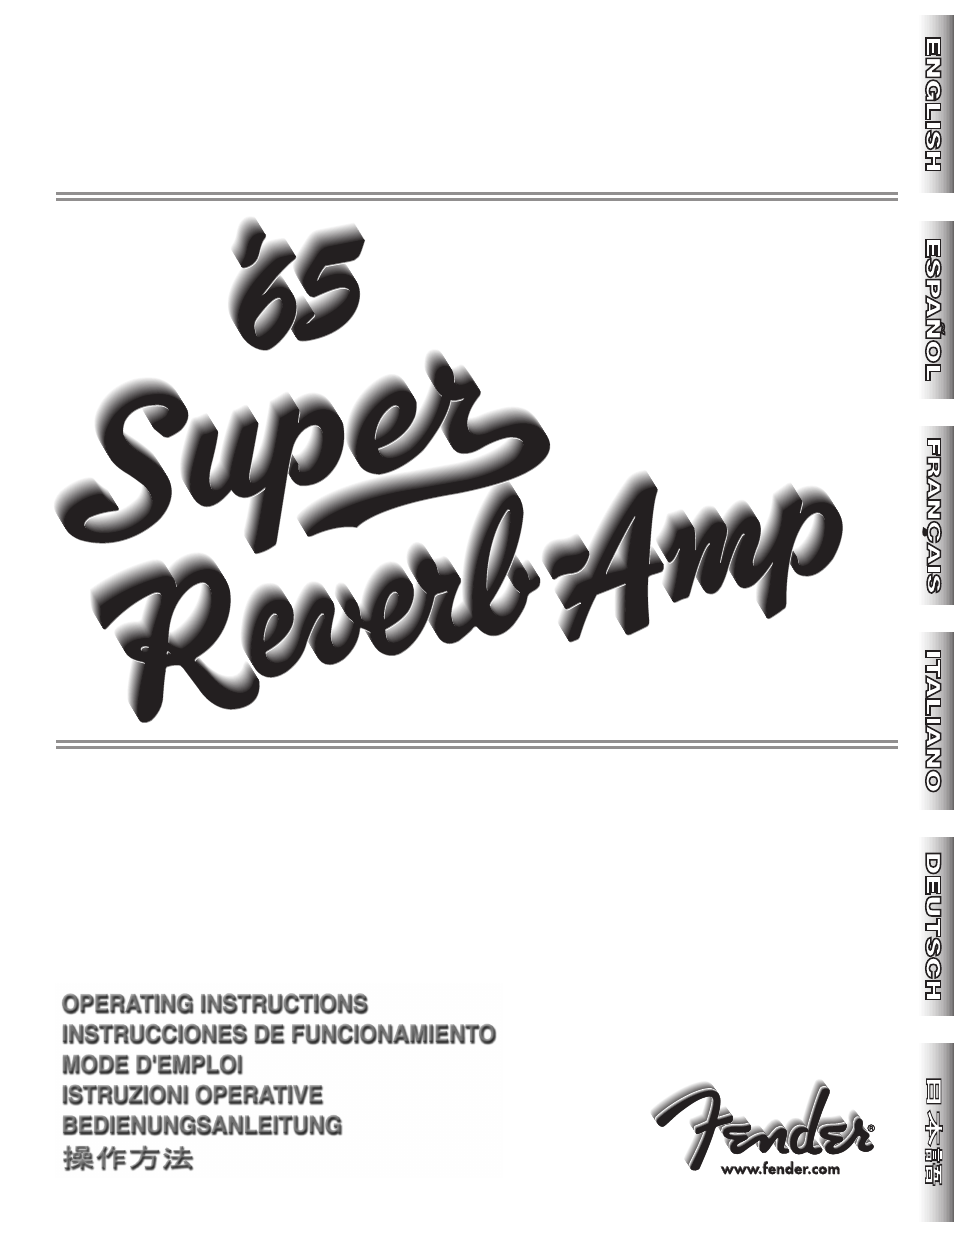 65 Super Reverb -Amp